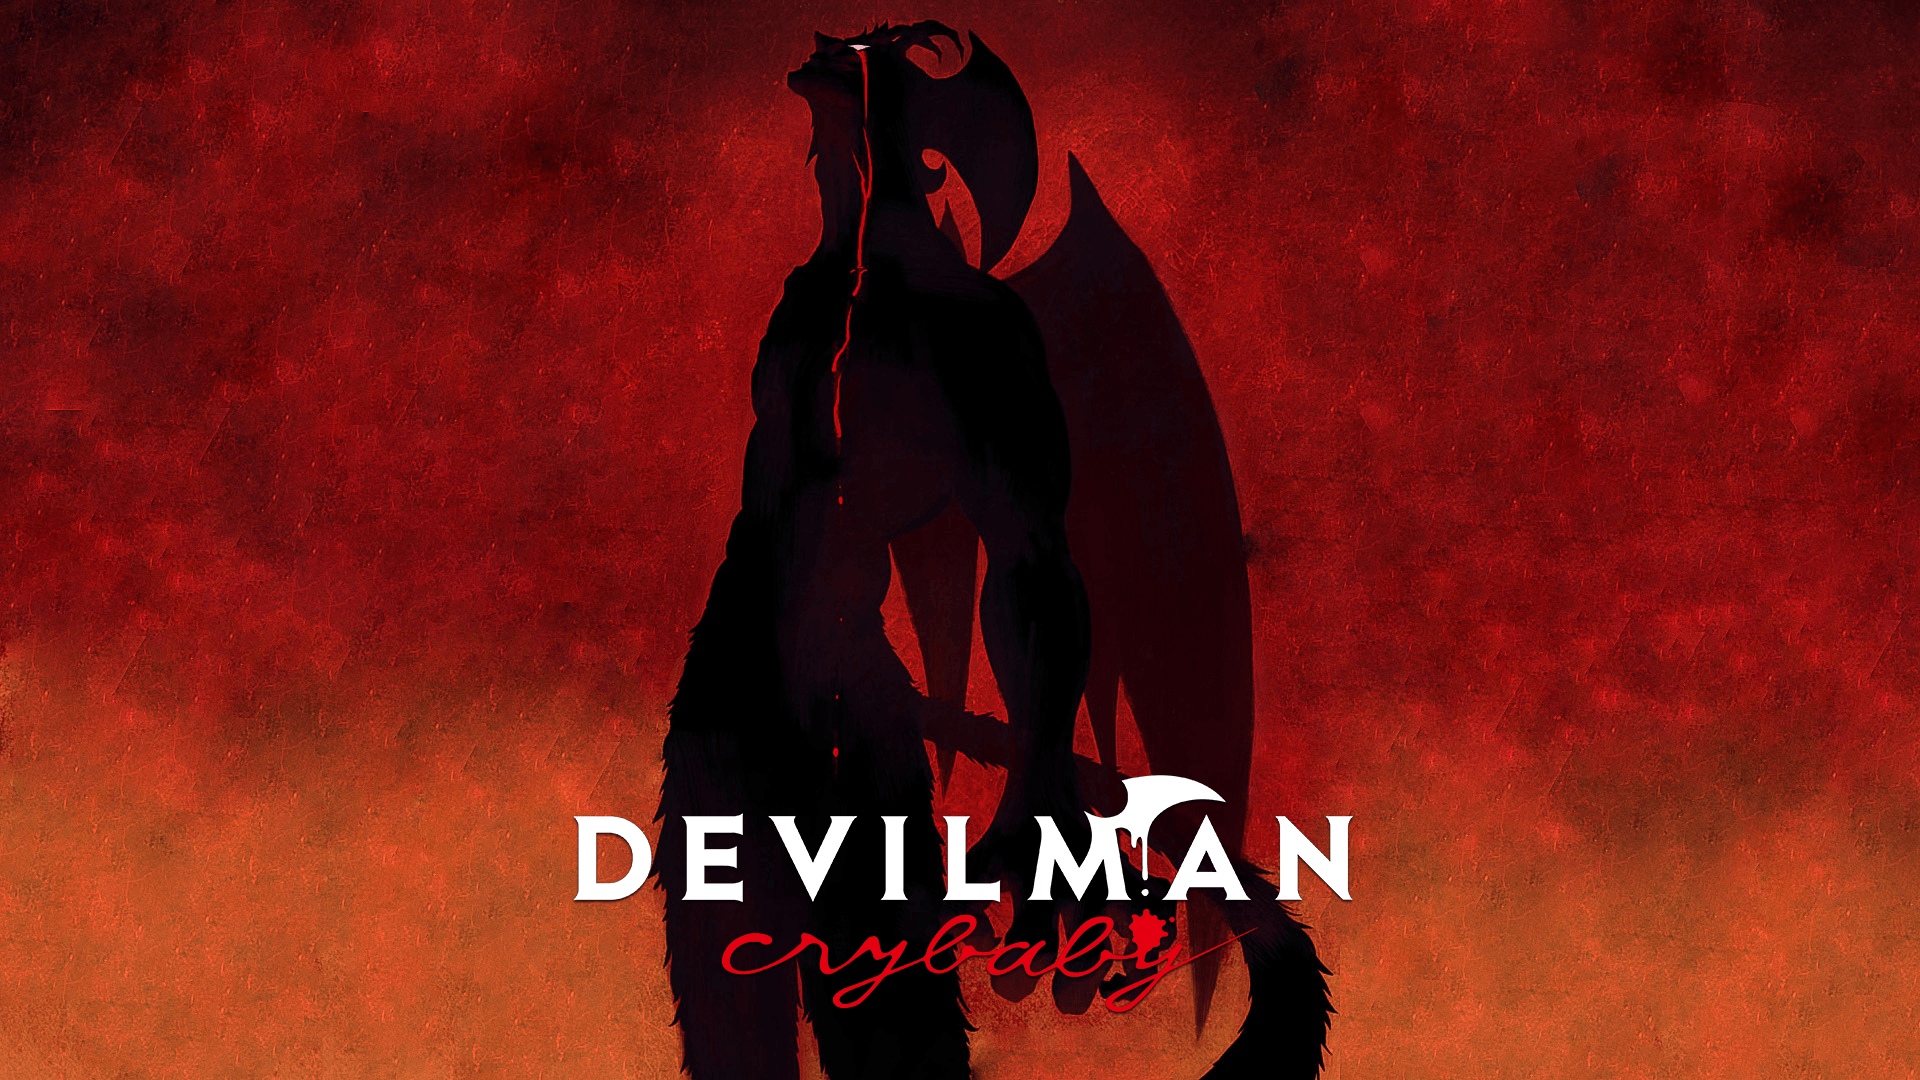 Devilman Crybaby Wallpaper 4k